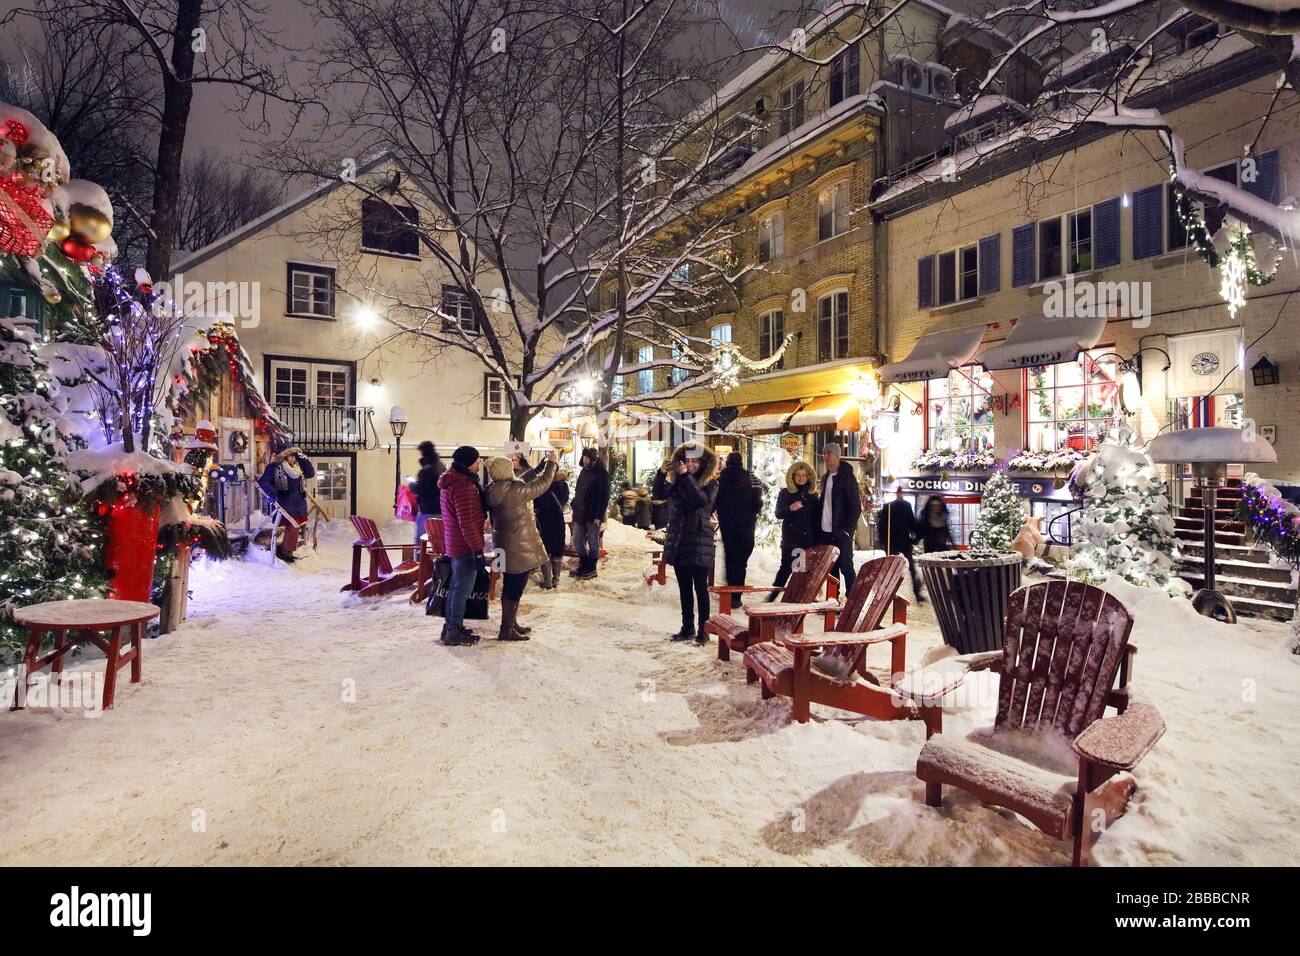 Die Rue Petit Champlain, eine Fußgängerzone, die bei Touristen und Einheimischen sehr beliebt ist und sich in der unteren Stadt Quebecs, Quebec City, Quebec, Kanada befindet Stockfoto